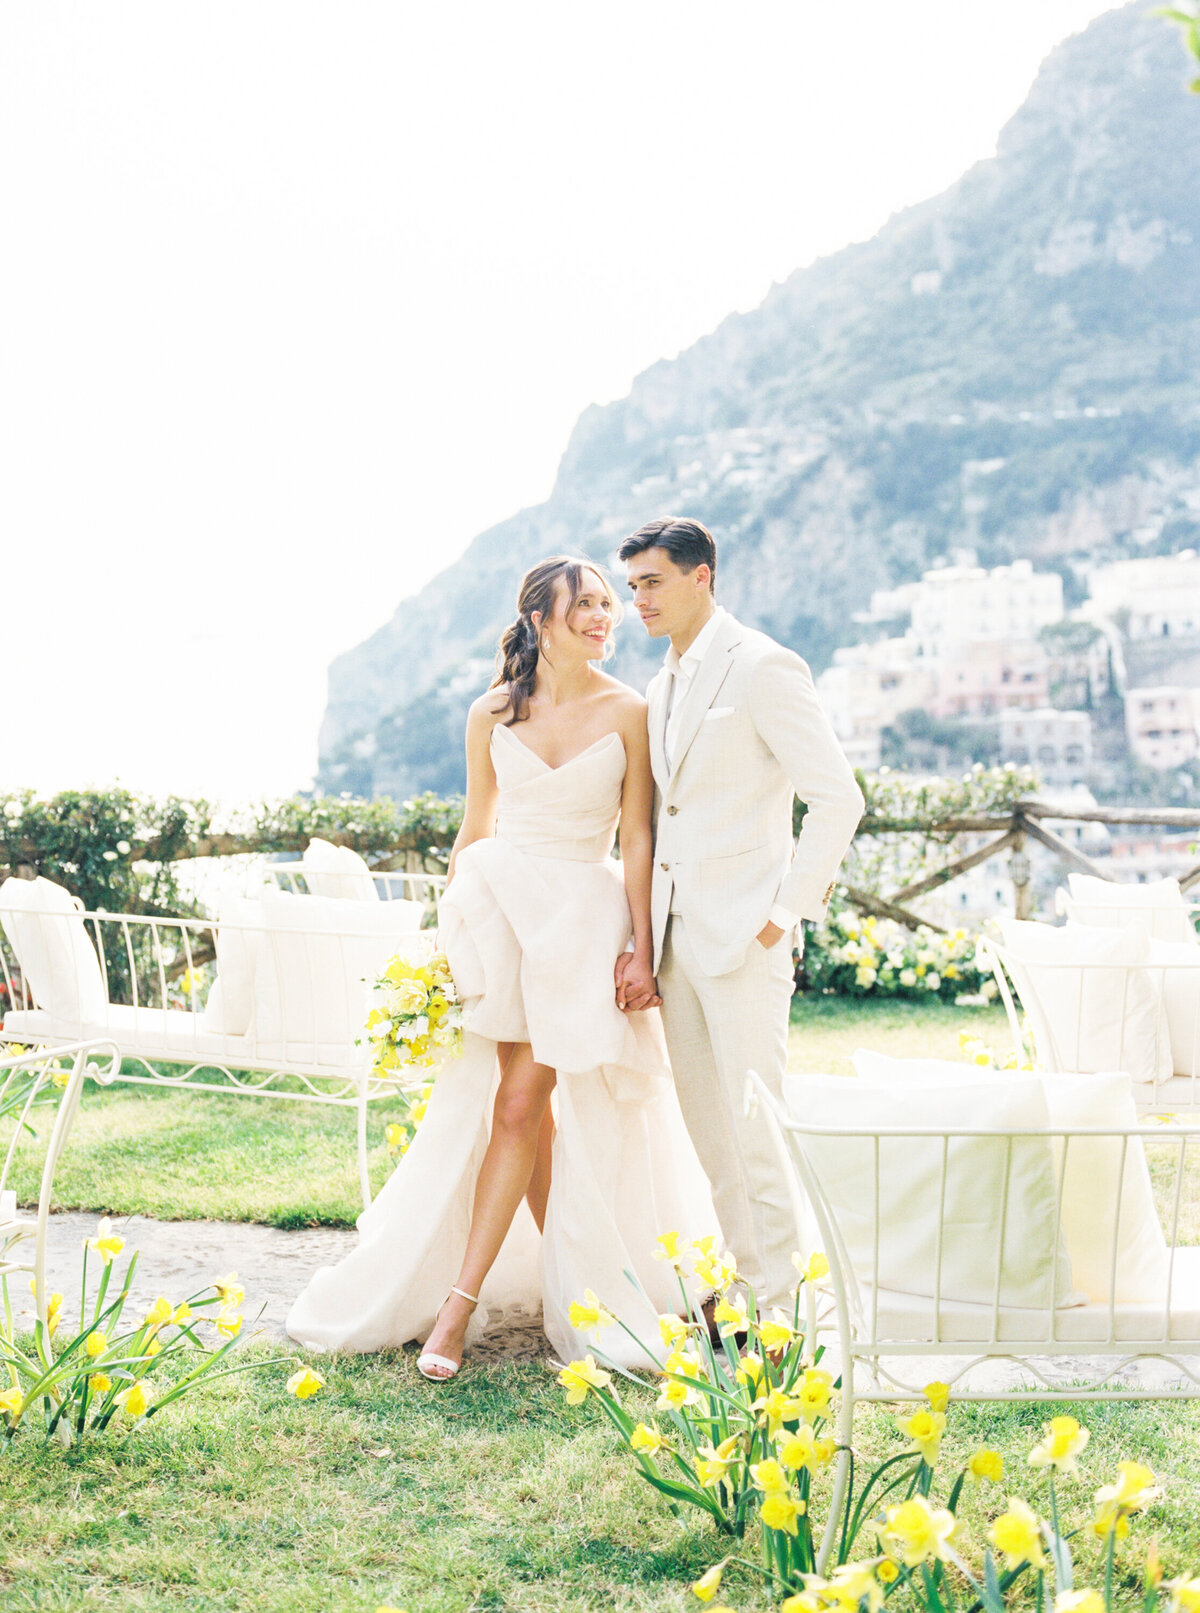 Rachael_Kazmier_Photography_Luxury_Destination_Editorial_Wedding_Photography_Positano_Amalfi-8